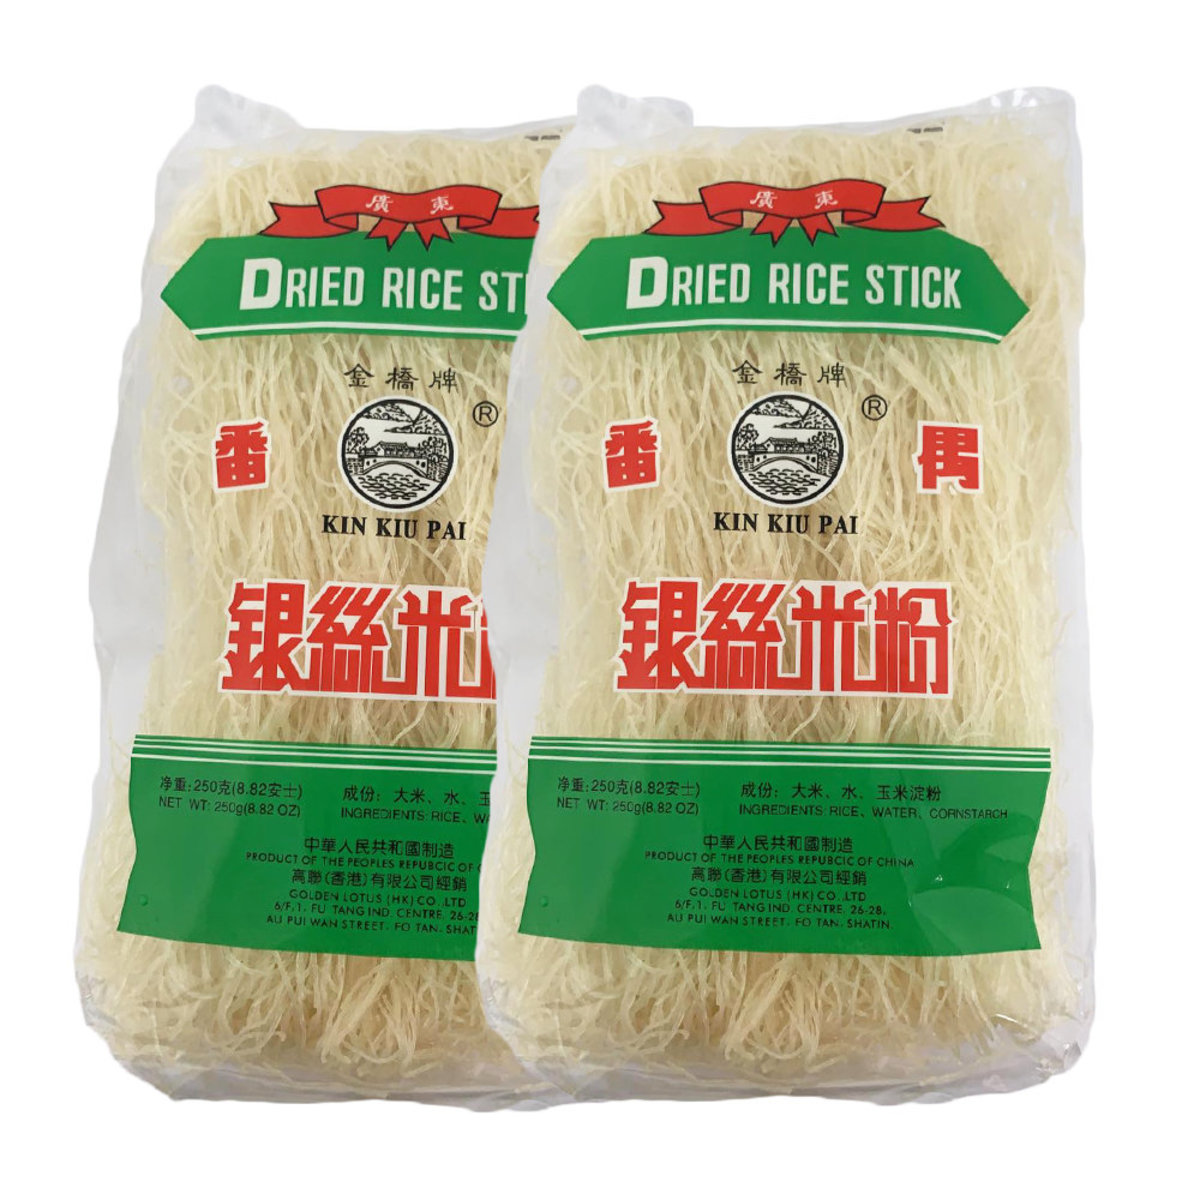 Kin Kiu Pai Dried Rice Stick (2 Packs around 500g)